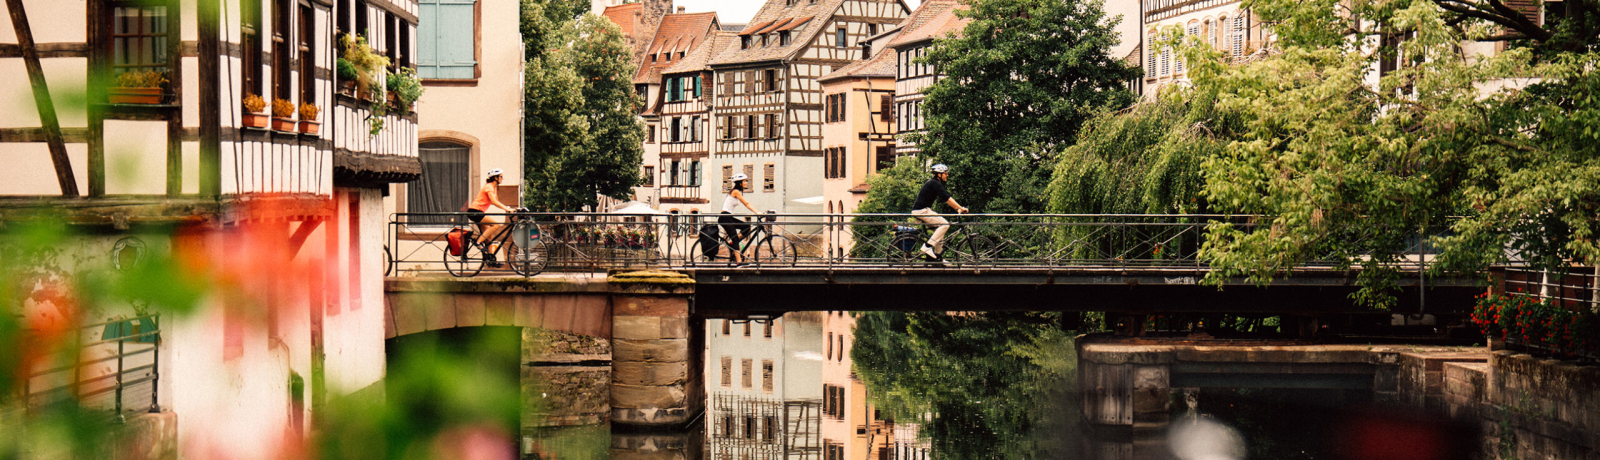 Cyclotourisme à la Petite France à Strasbourg